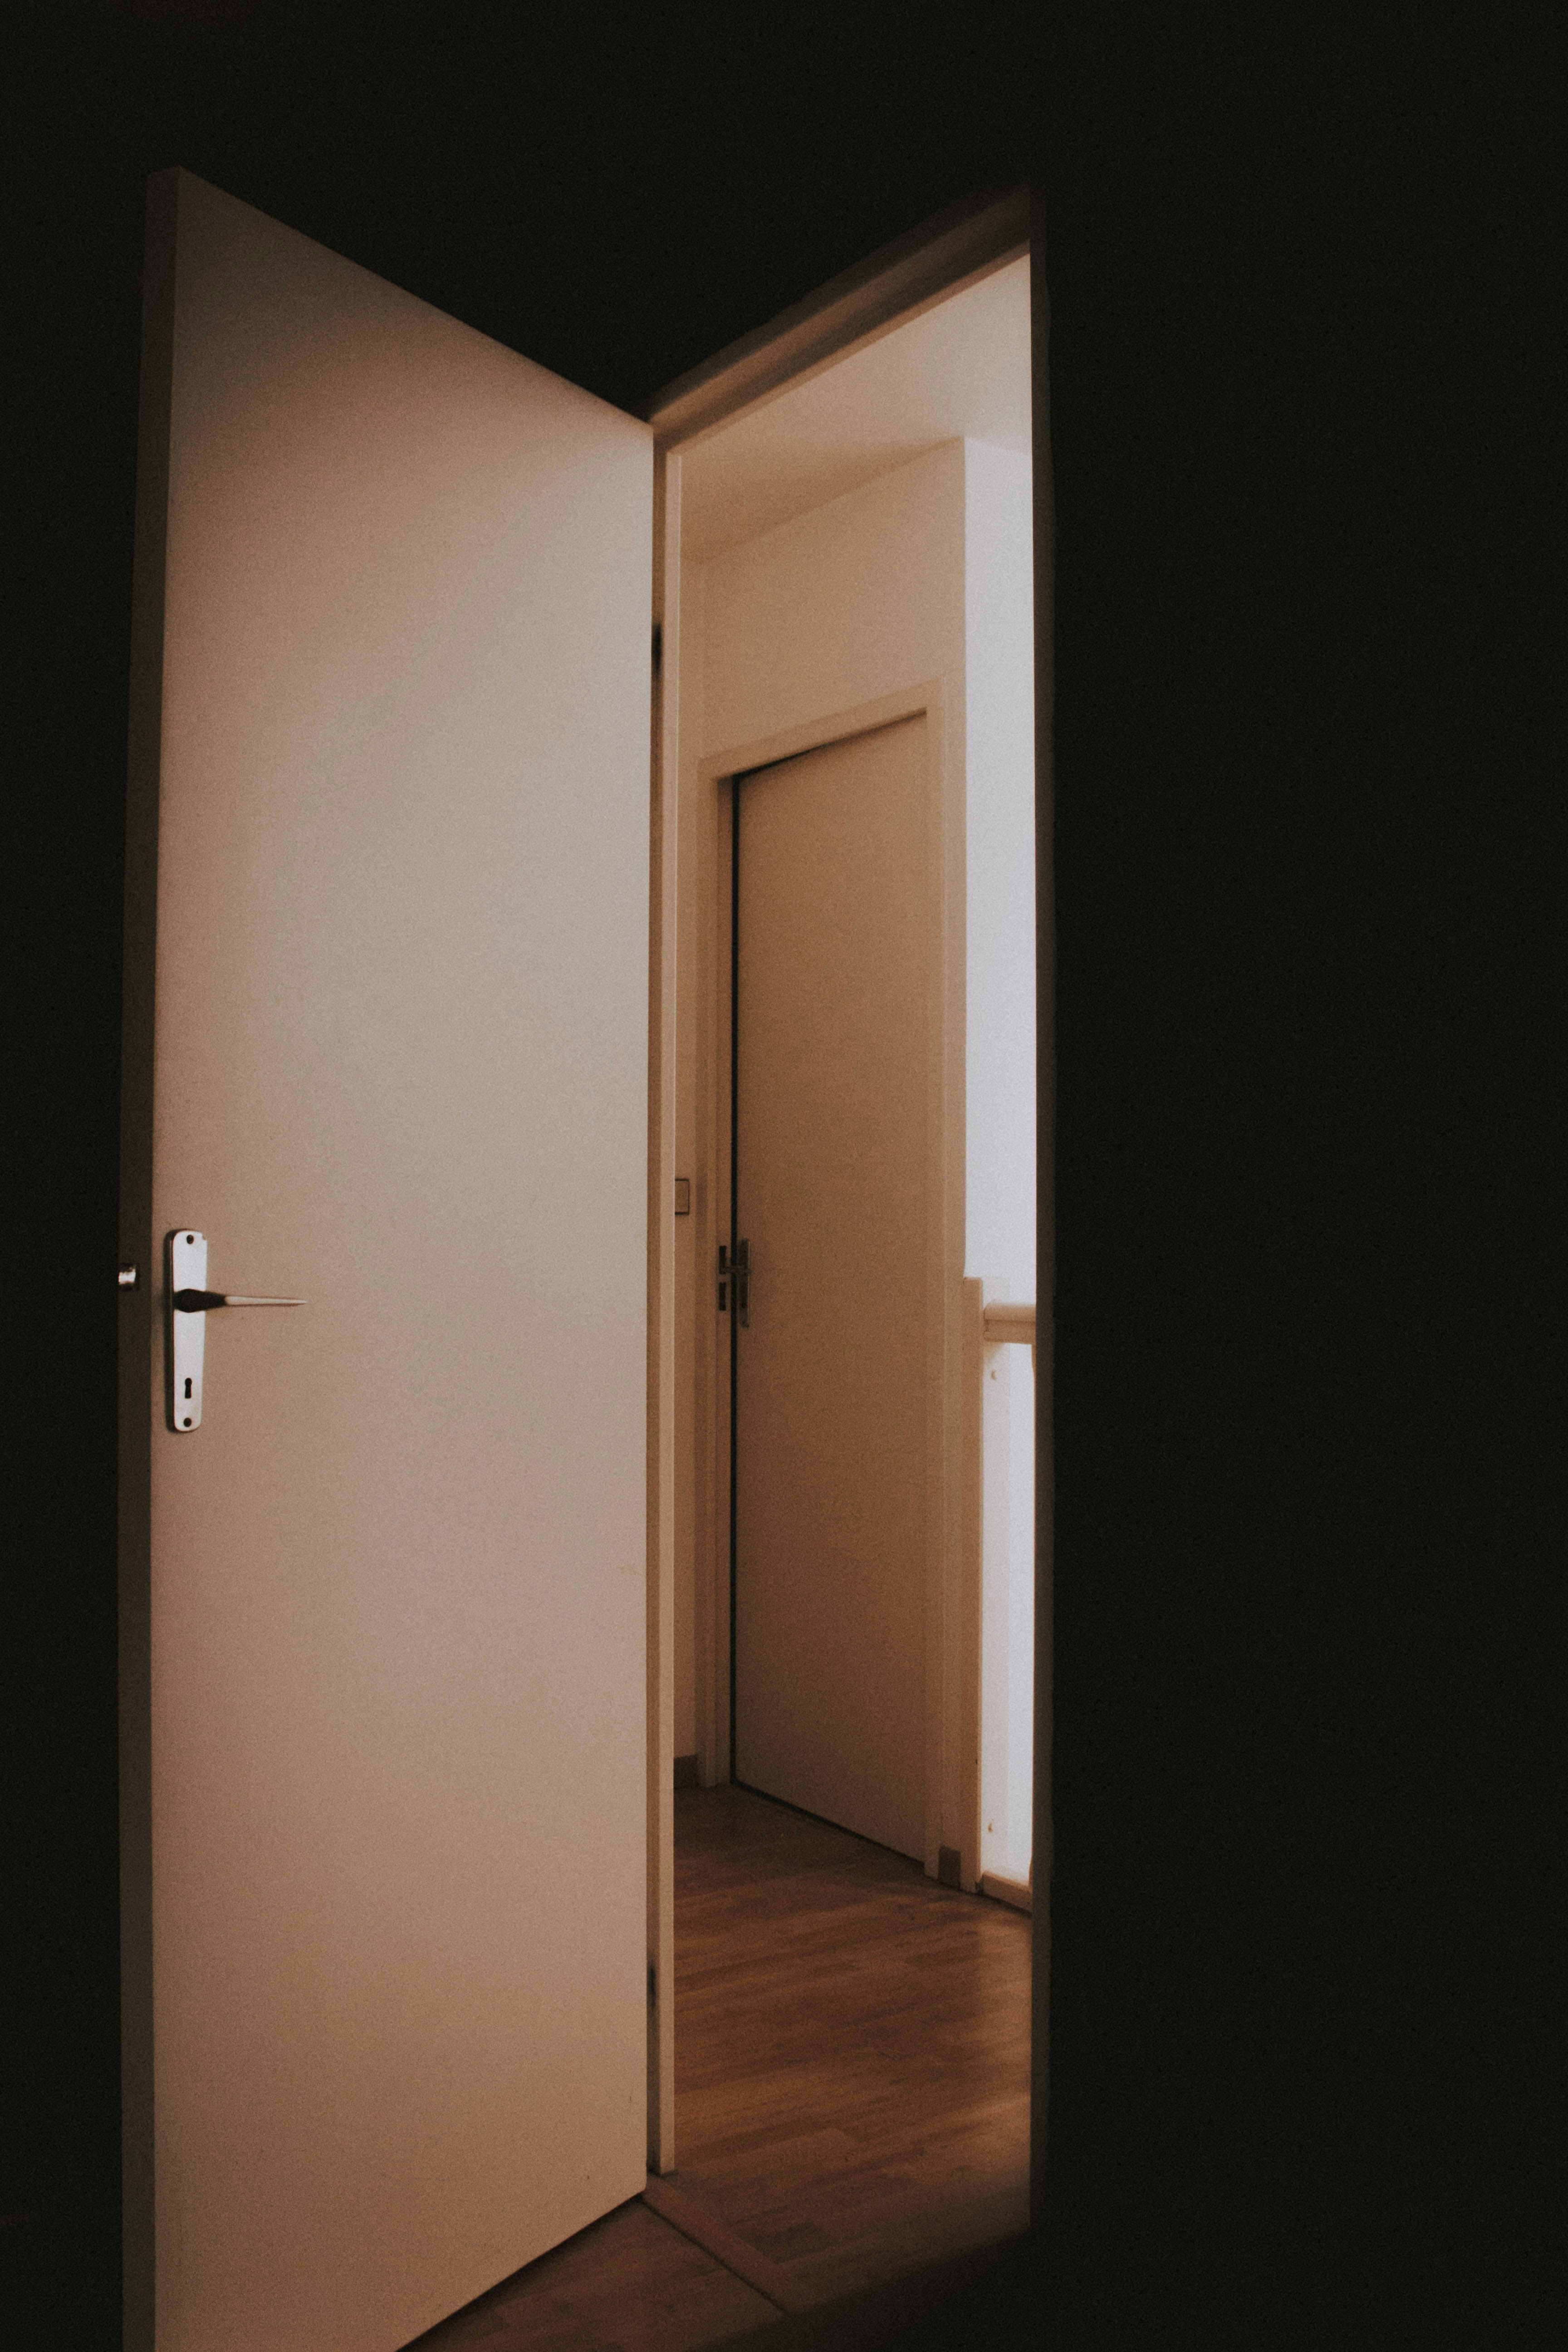 Lights off with an open door | Source: Unsplash